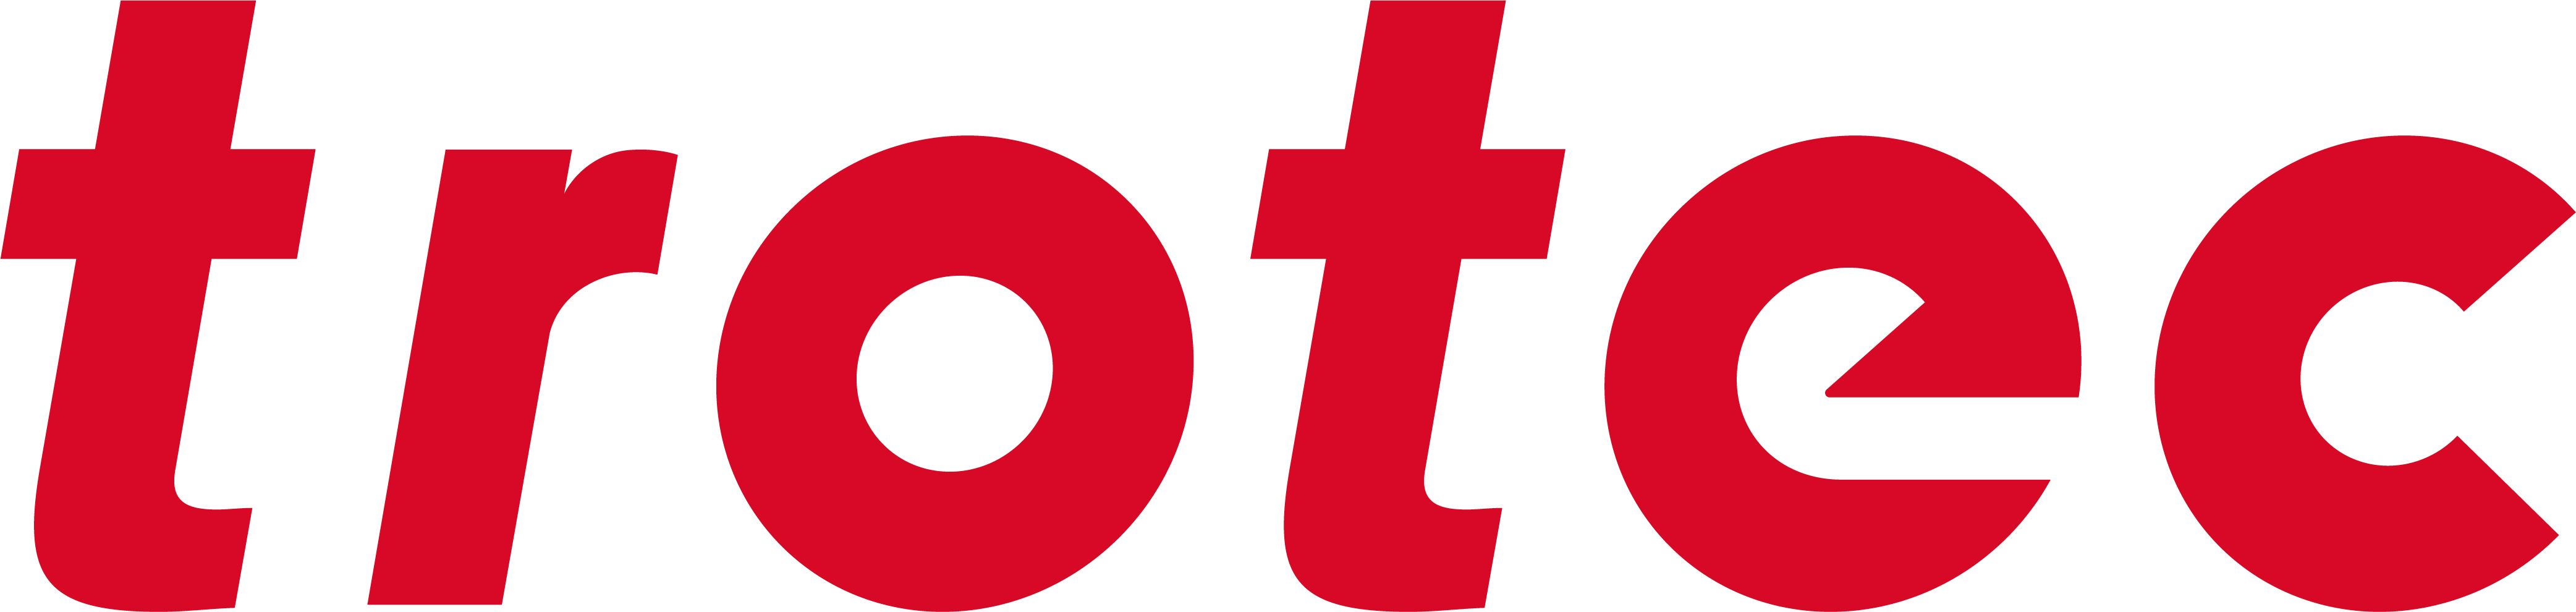 trotec Logo 2020 rgb 1000px 002